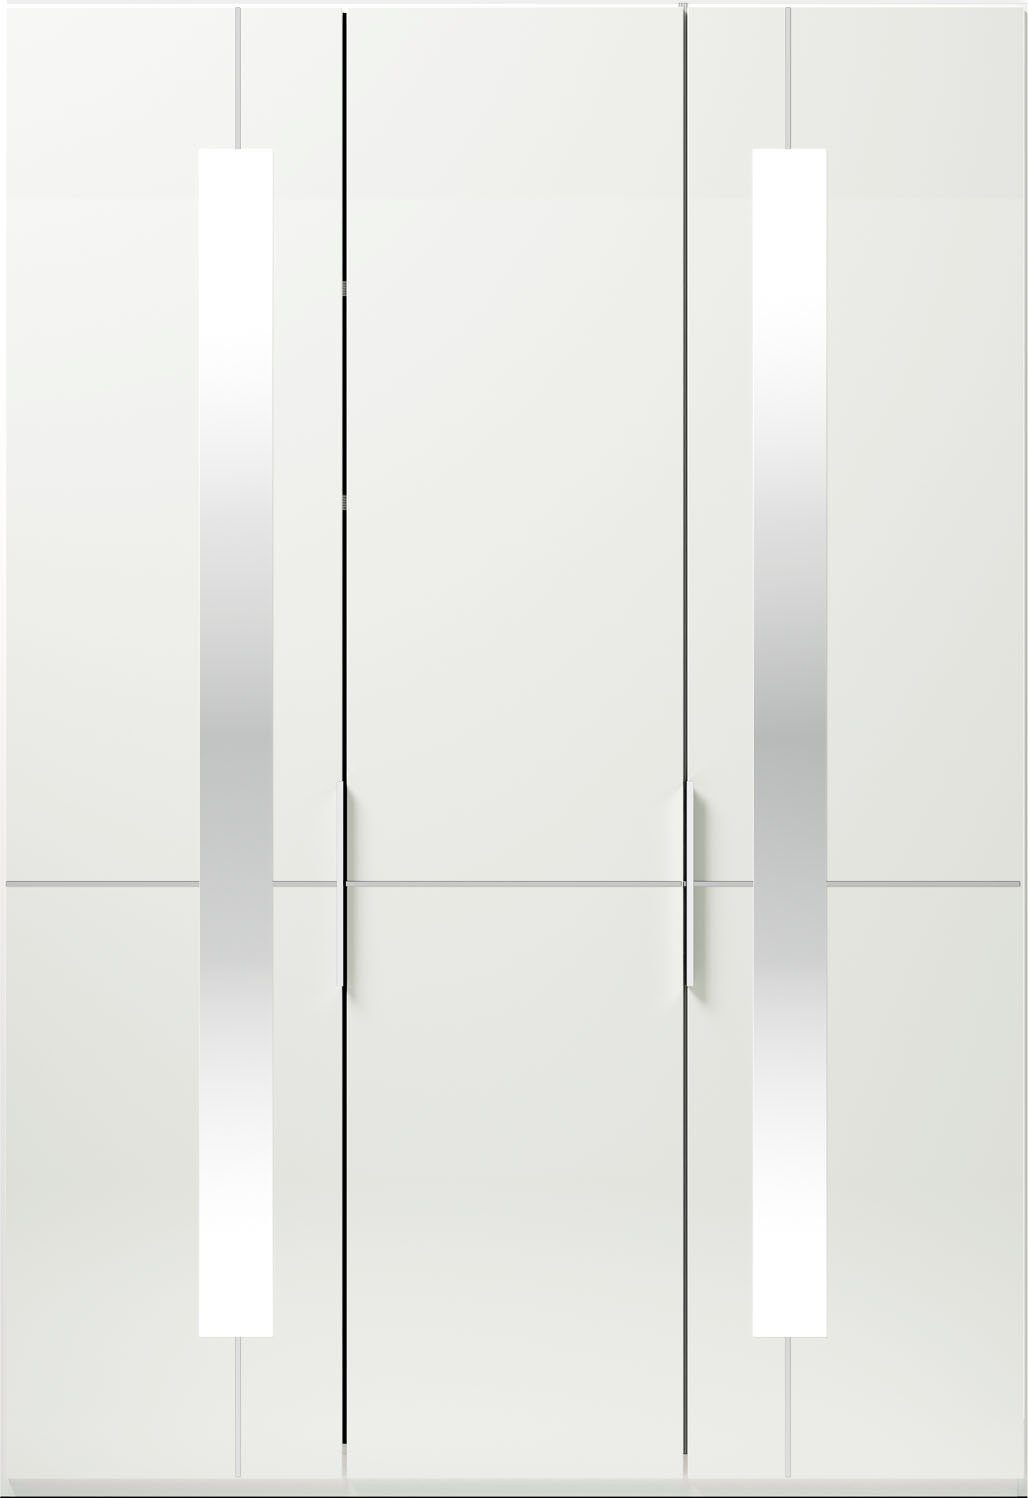 GALLERY M Einlegeböden Musterring by mit branded Weiß W Imola Drehtürenschrank inklusive Glastüren Kleiderstangen, und Zierspiegel